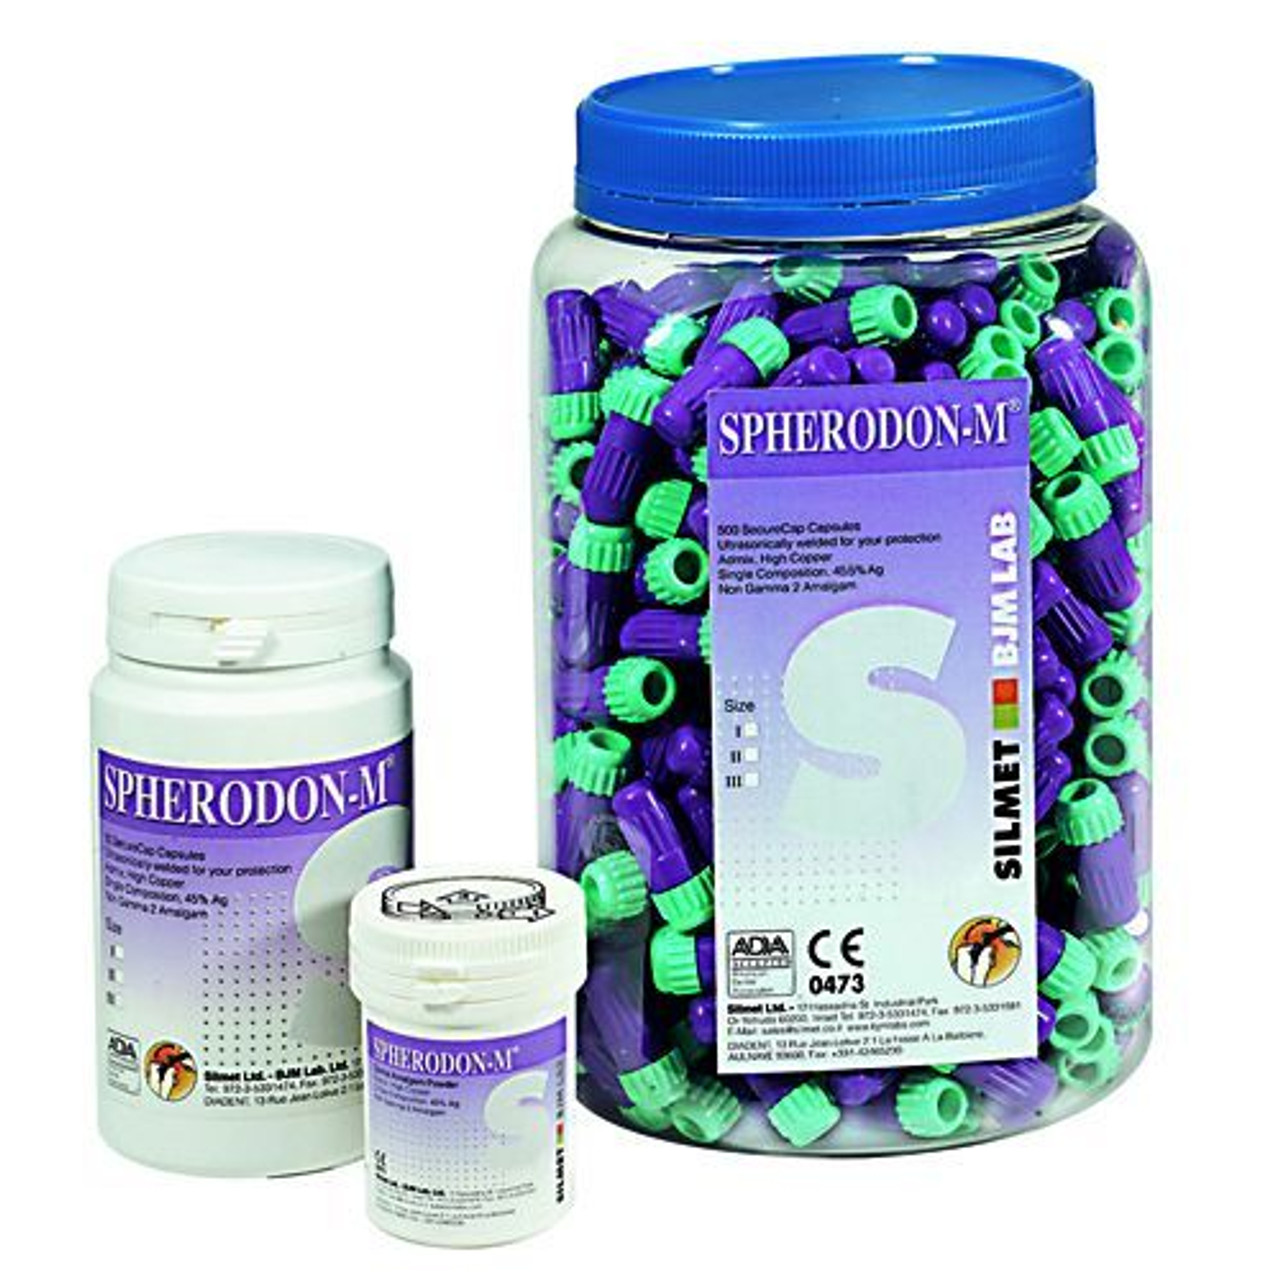 Spherodon-M 1 Spill Regular Set Admix Alloy 45.5% Ag. 50/jr. - Silmet*